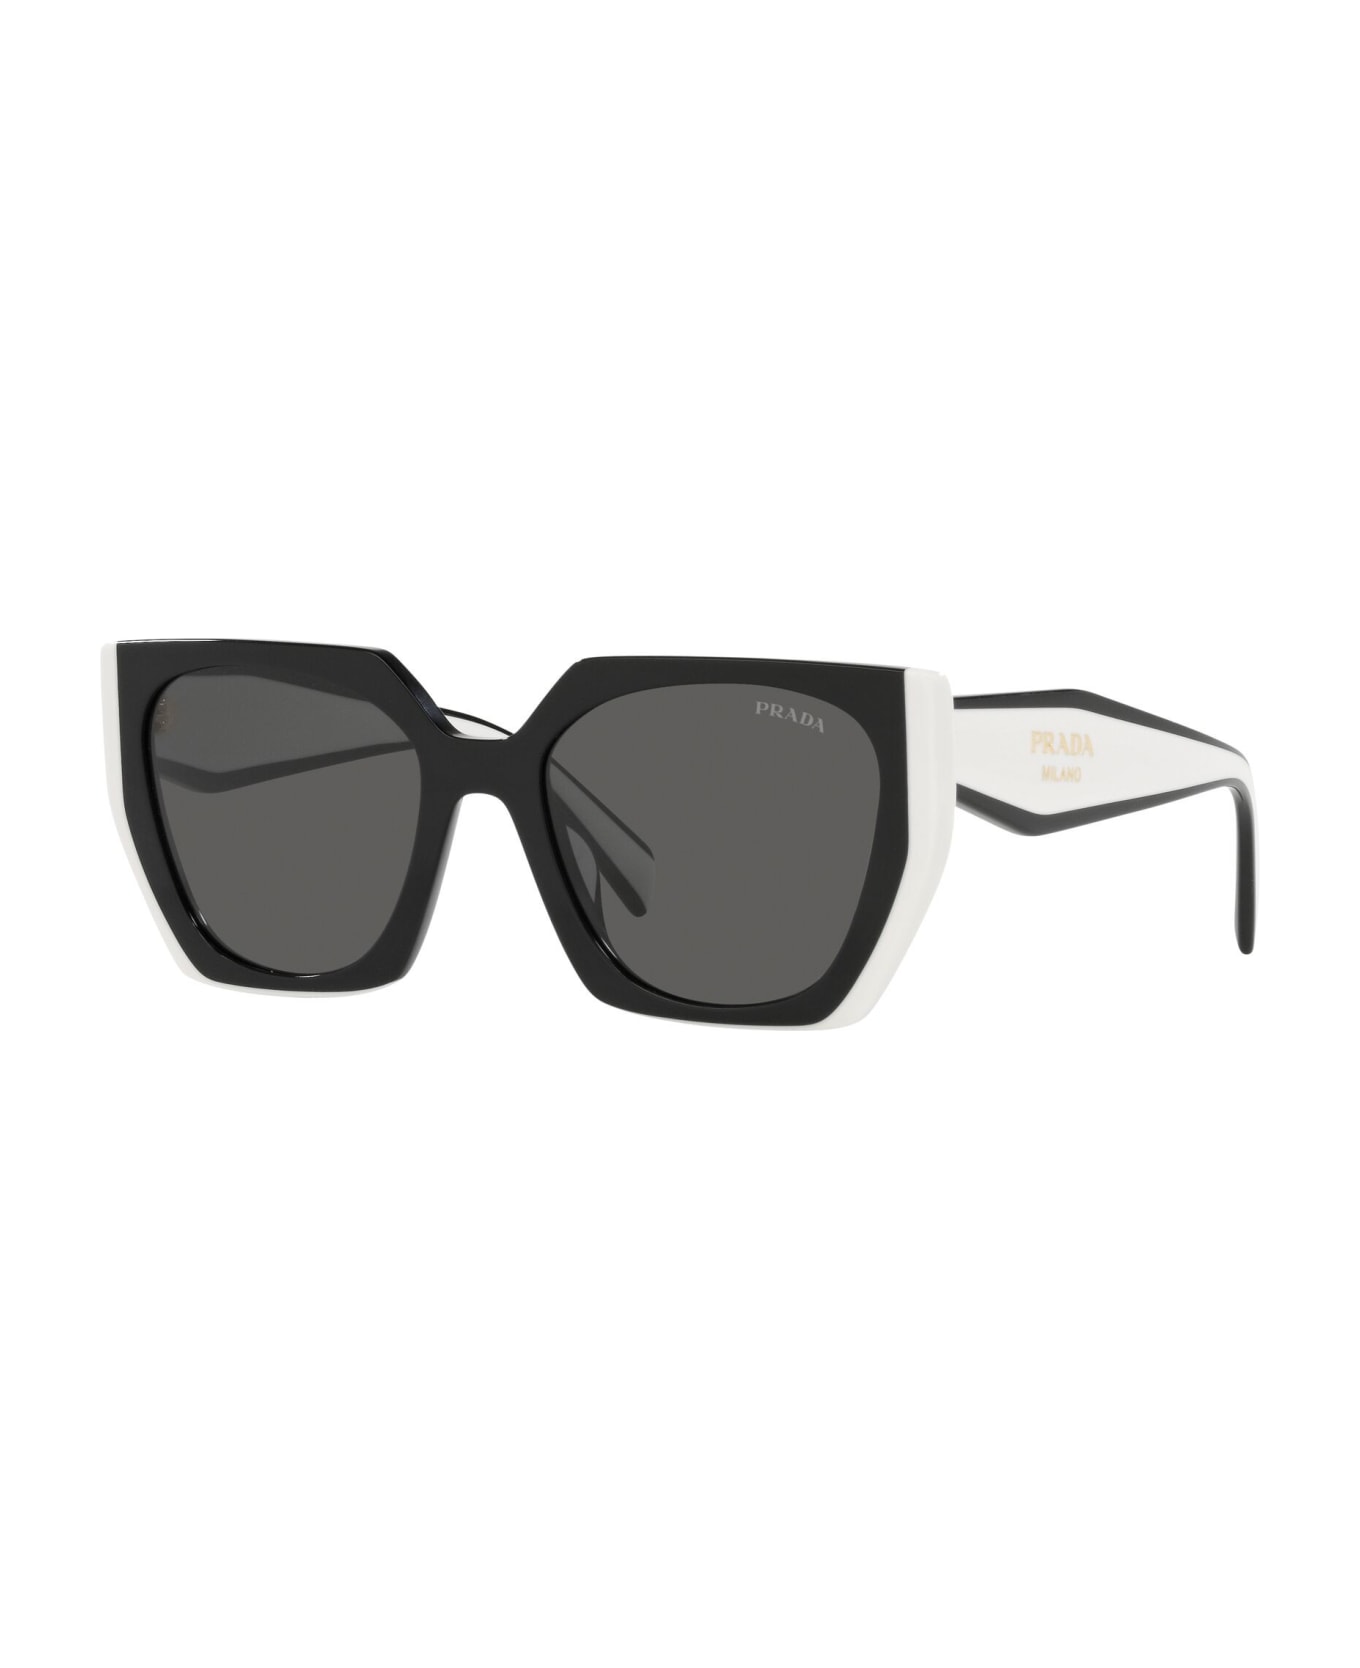 Prada Eyewear neon Sunglasses - Nero/Nero